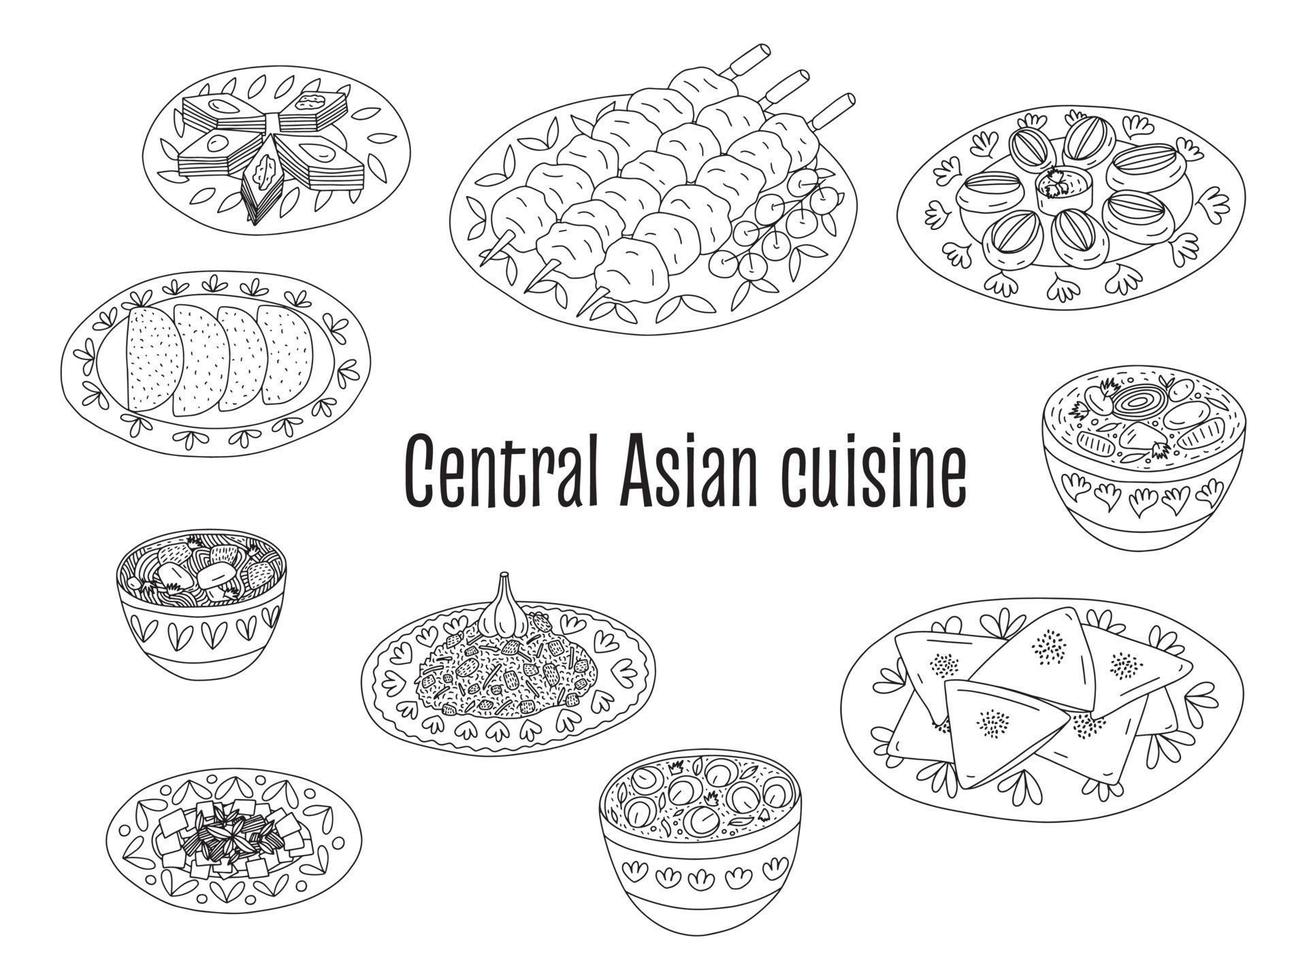 zentralasiatische küche gerichte vektorset. verschiedene Arten der zentralasiatischen Küche Samsa, Shorpa, Schaschlik, Pilaw, Lagman-Suppe und Beshbarmak. vektor